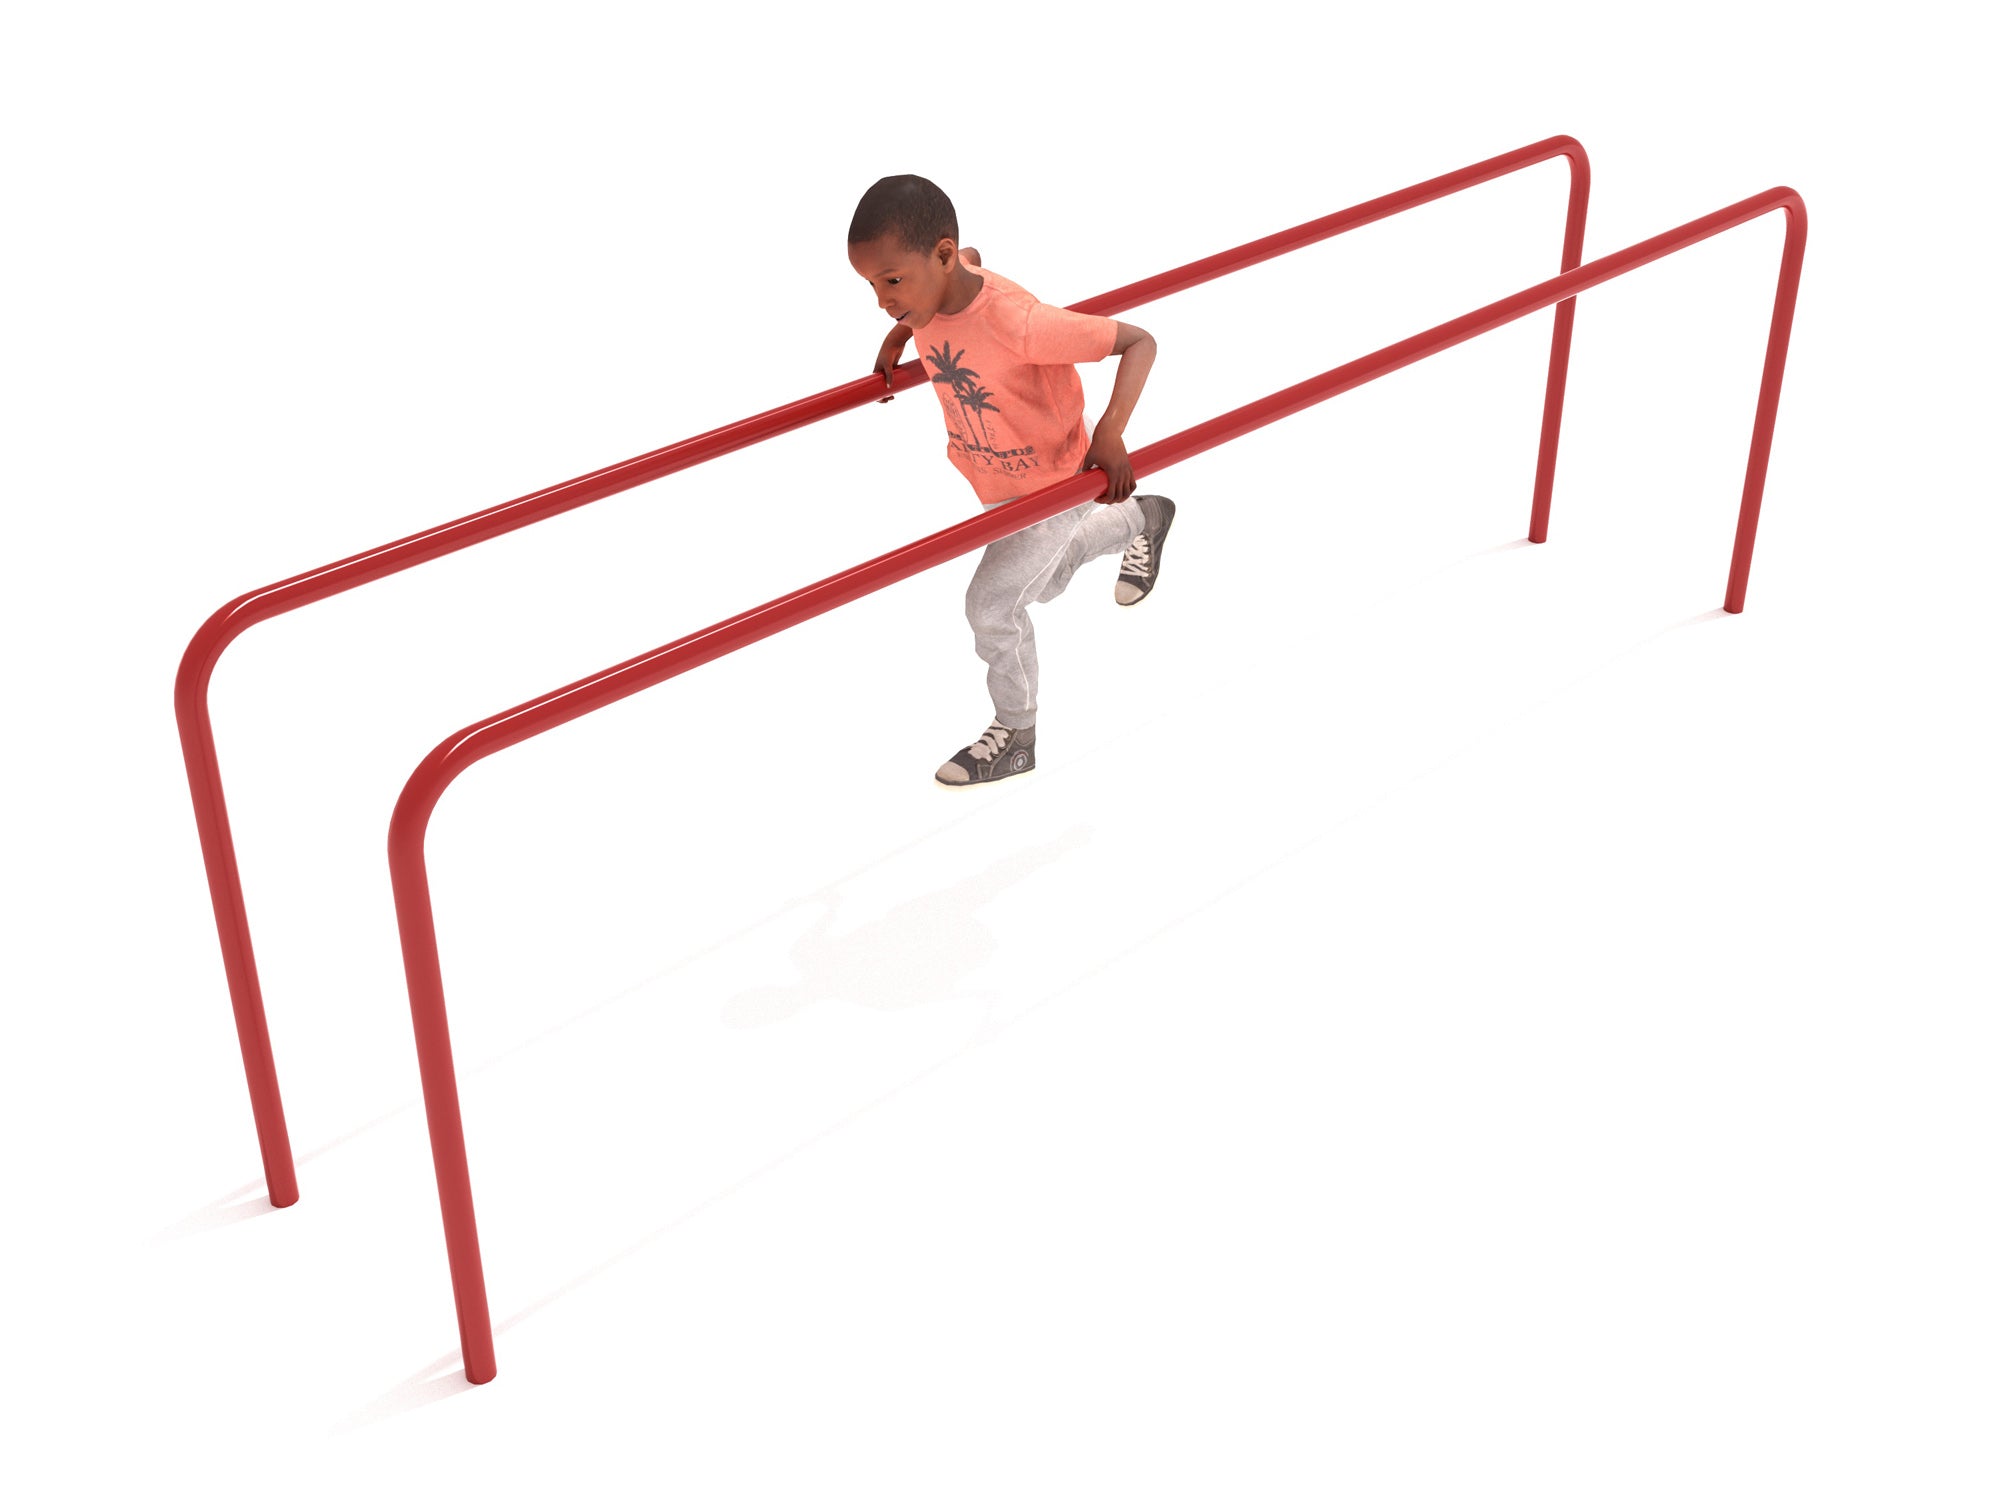 Playground-Equipment-Parallel-Training-Bars-Kid